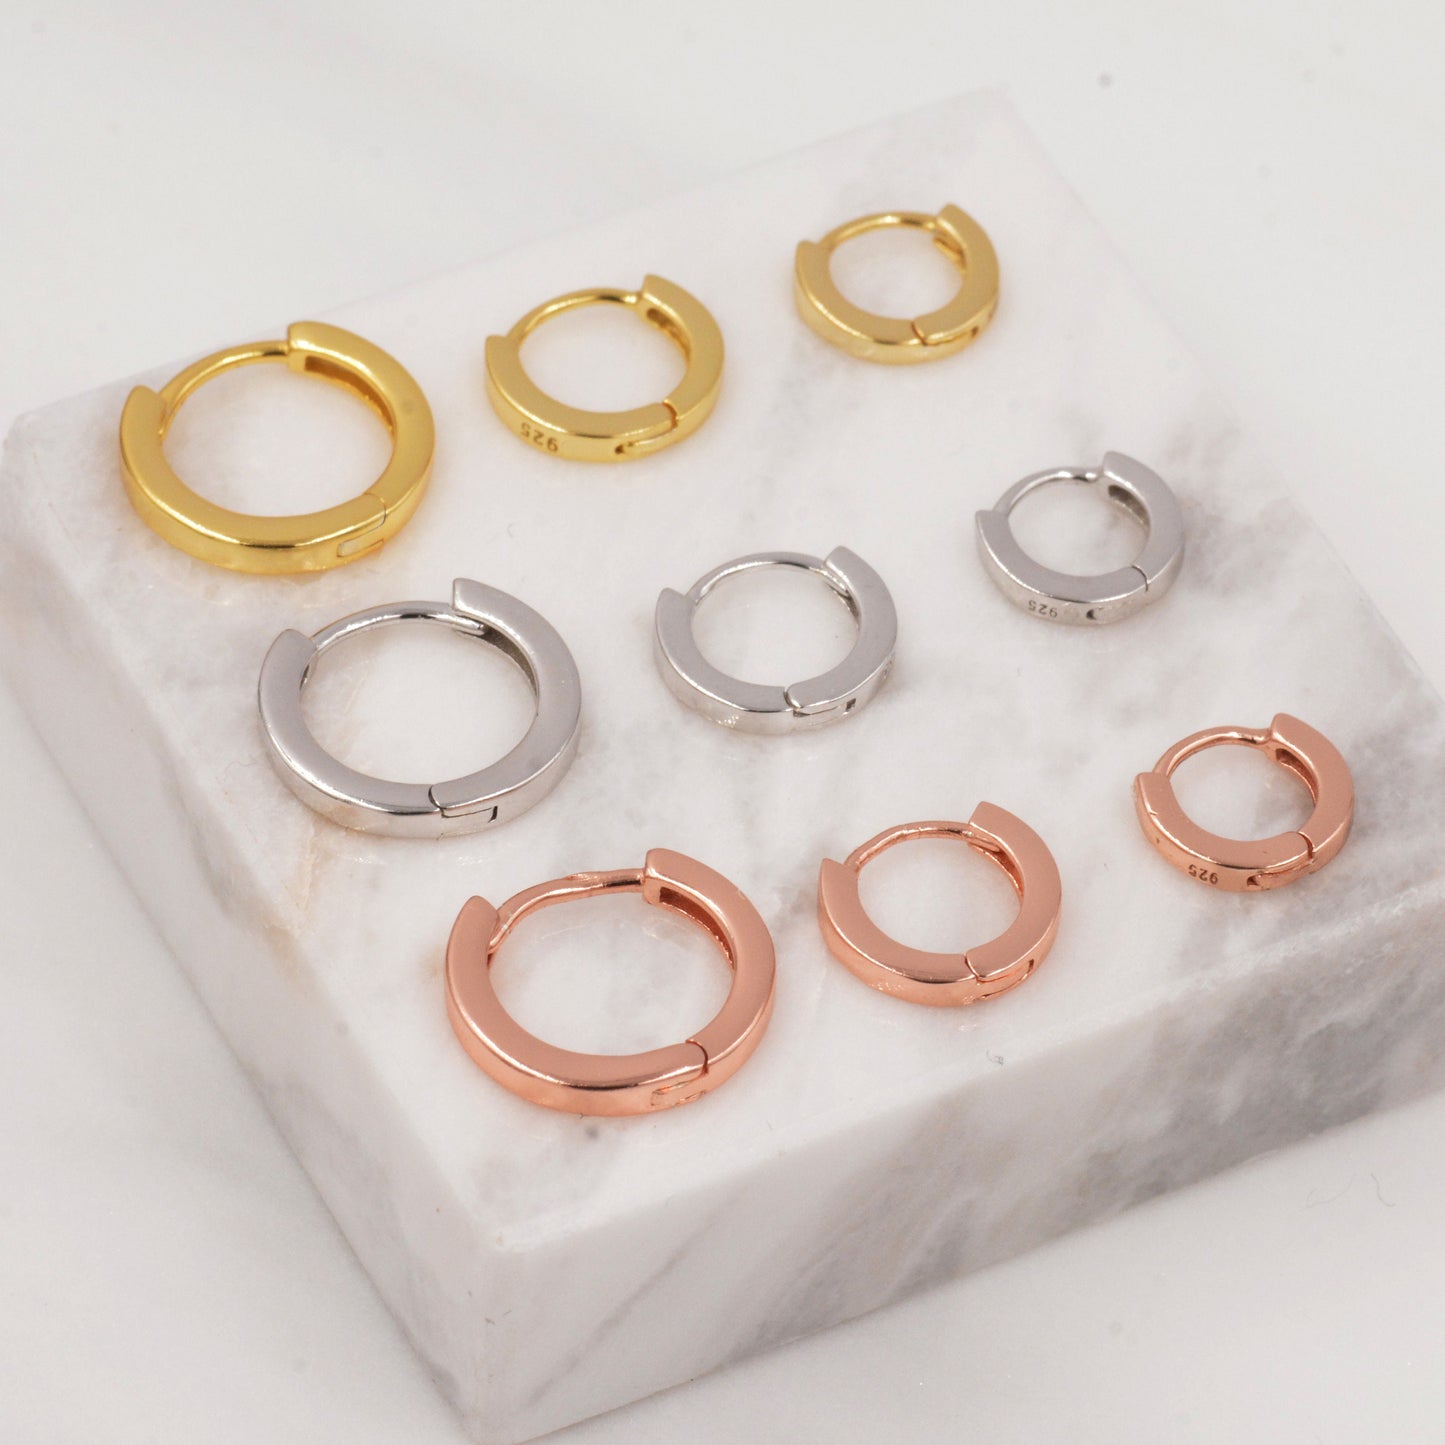 Minimalist Huggie Hoops in Sterling Silver, 6mm,  7mm, 8mm and 10mm Clicker Hoops, Rose Gold or Gold, Simple Sleeper Hoop Earrings